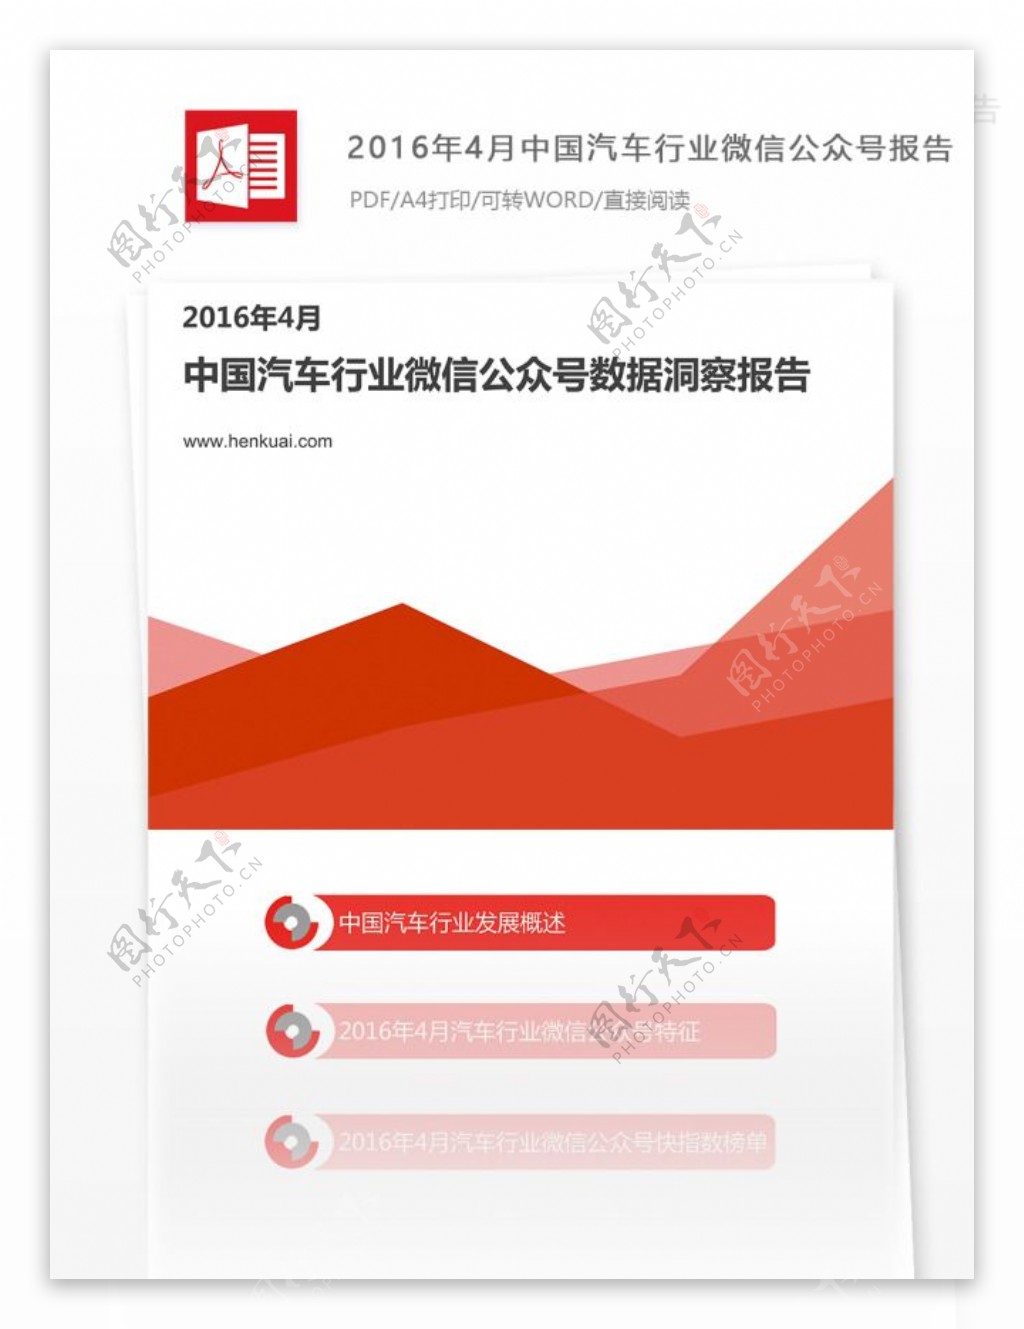 一份中国汽车行业微信公众号汽车行业分析报告